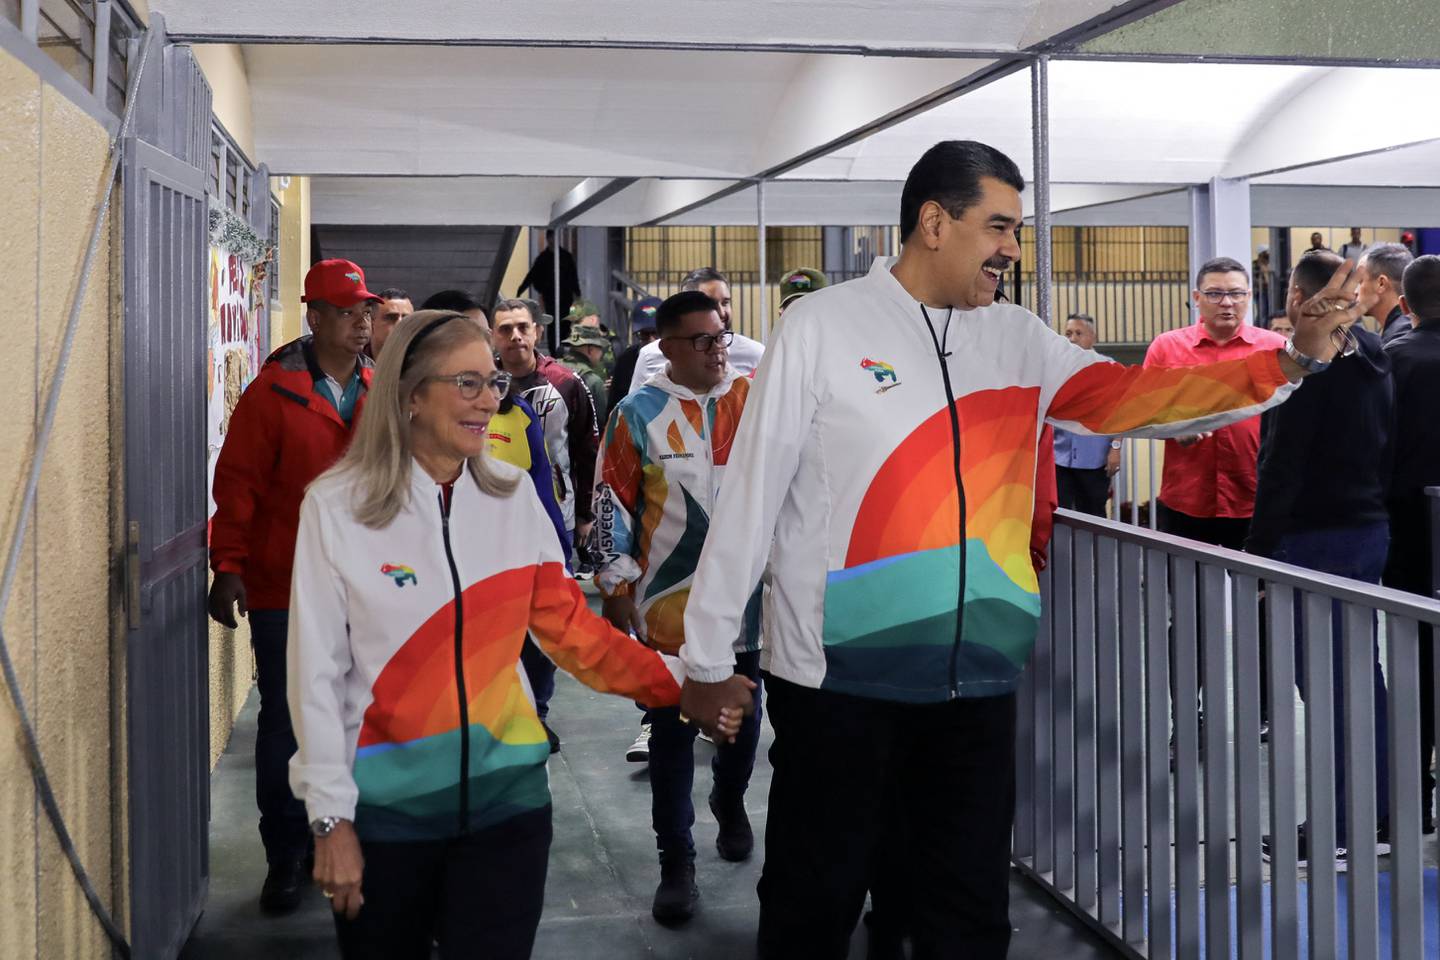 El presidente de Venezuela, Nicolás Maduro (derecha), acompañado por su esposa Cilia Flores, saludando en un colegio electoral durante un referéndum consultivo sobre la soberanía venezolana sobre la región del Esequibo controlada por la vecina Guyana.